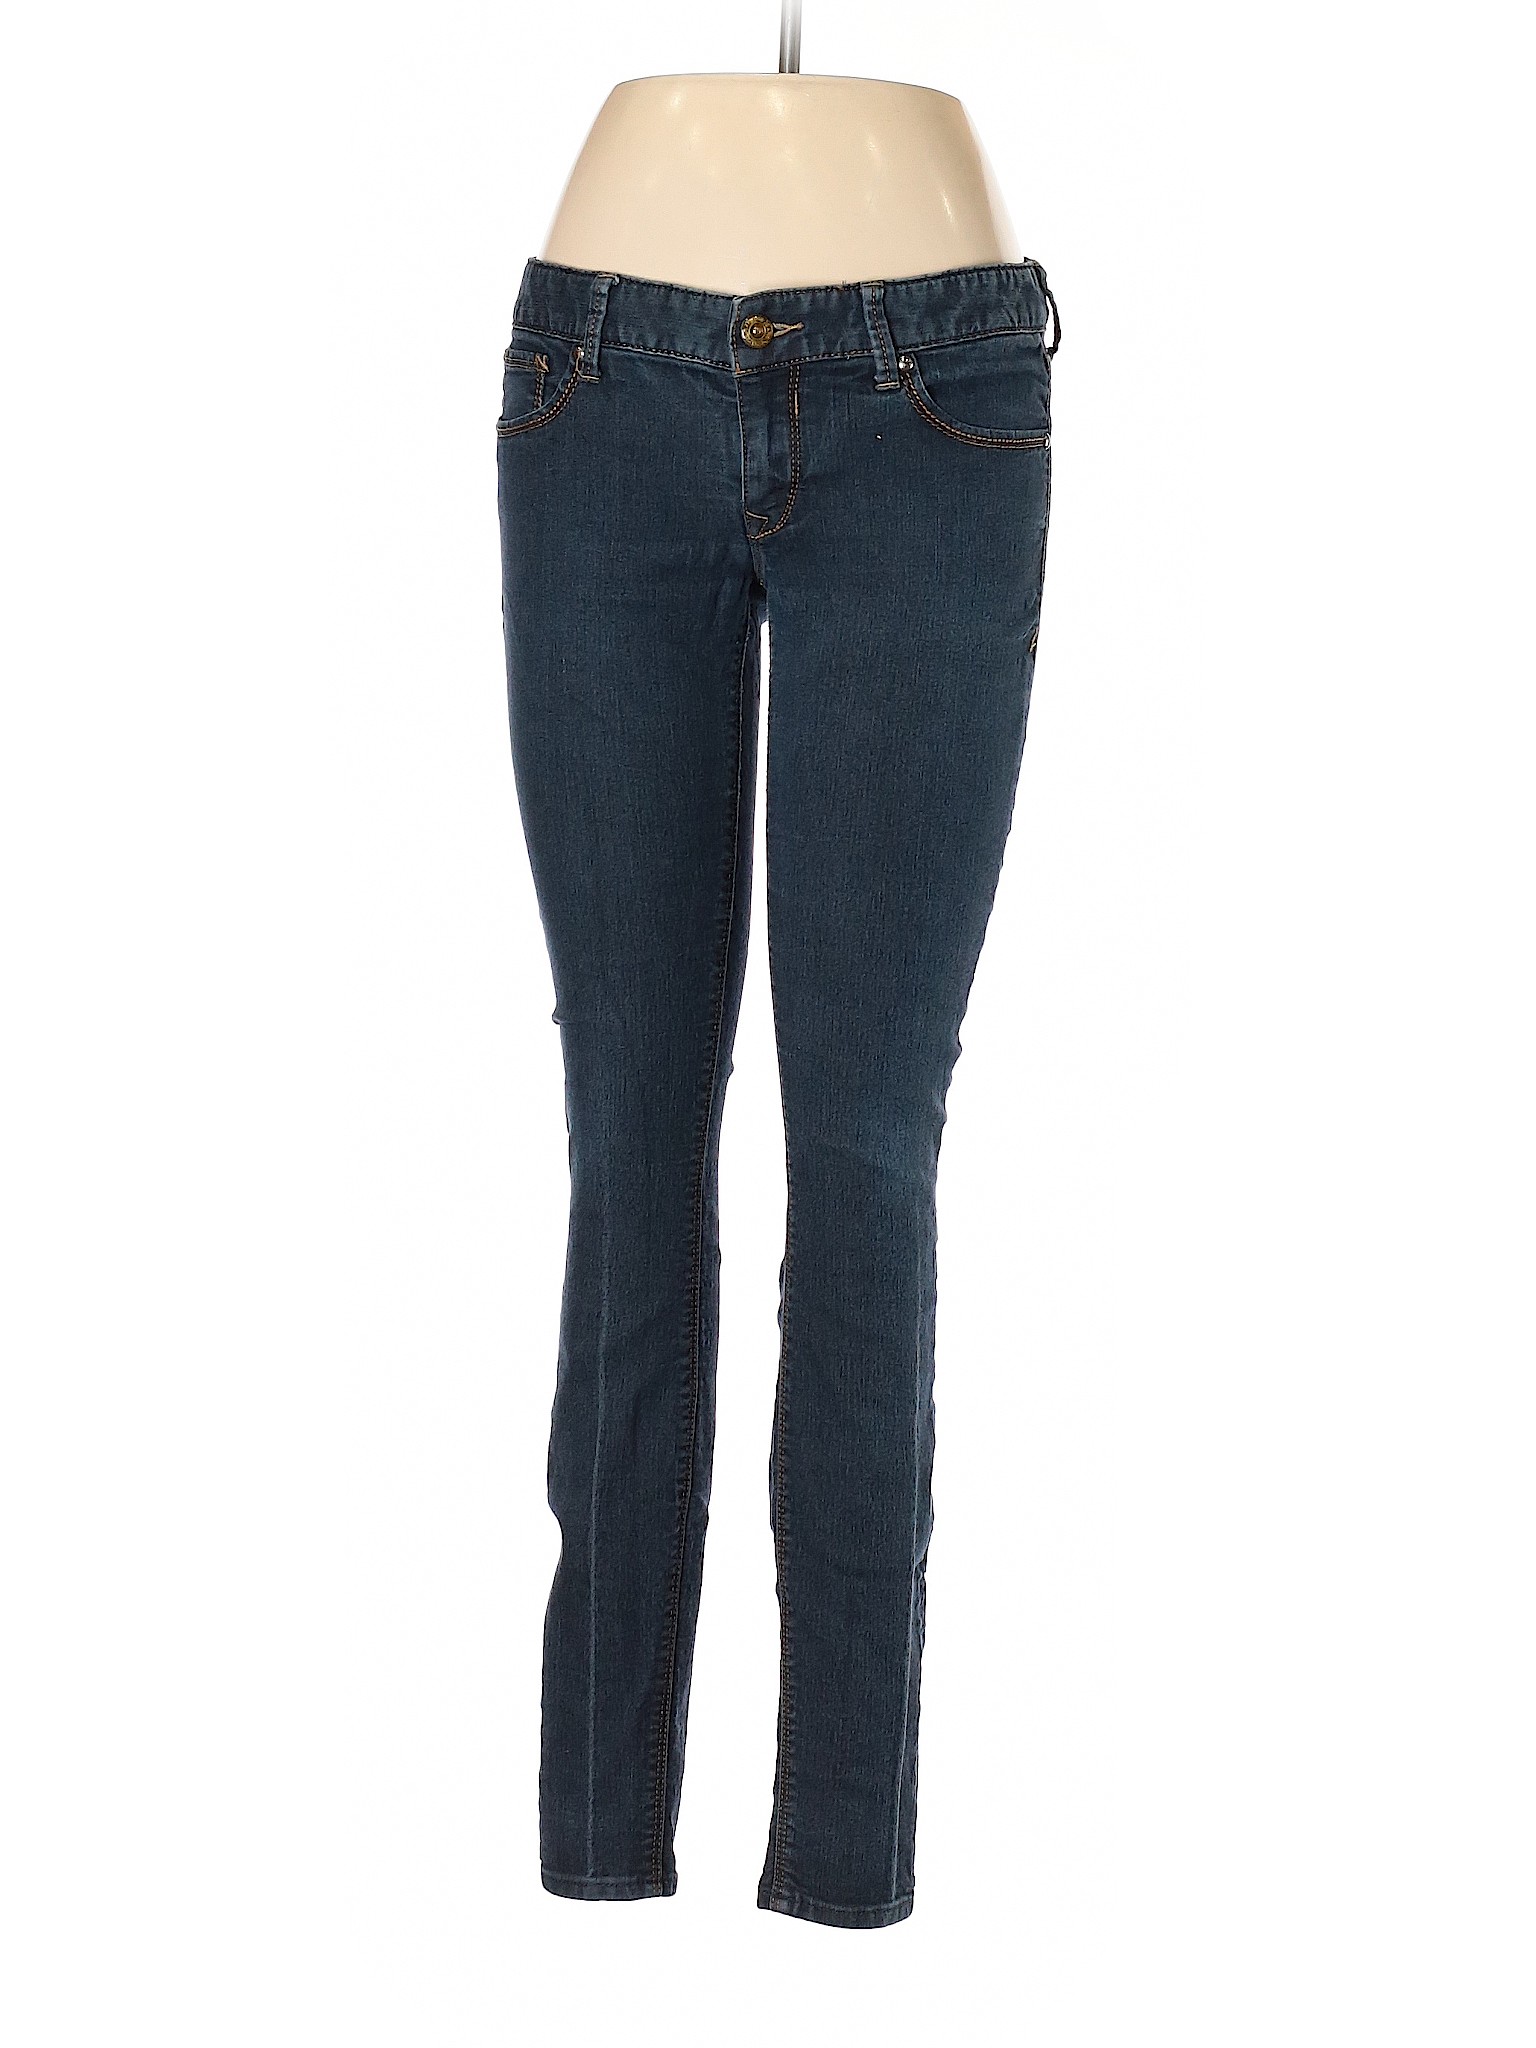 Express Women Blue Jeans 6 | eBay